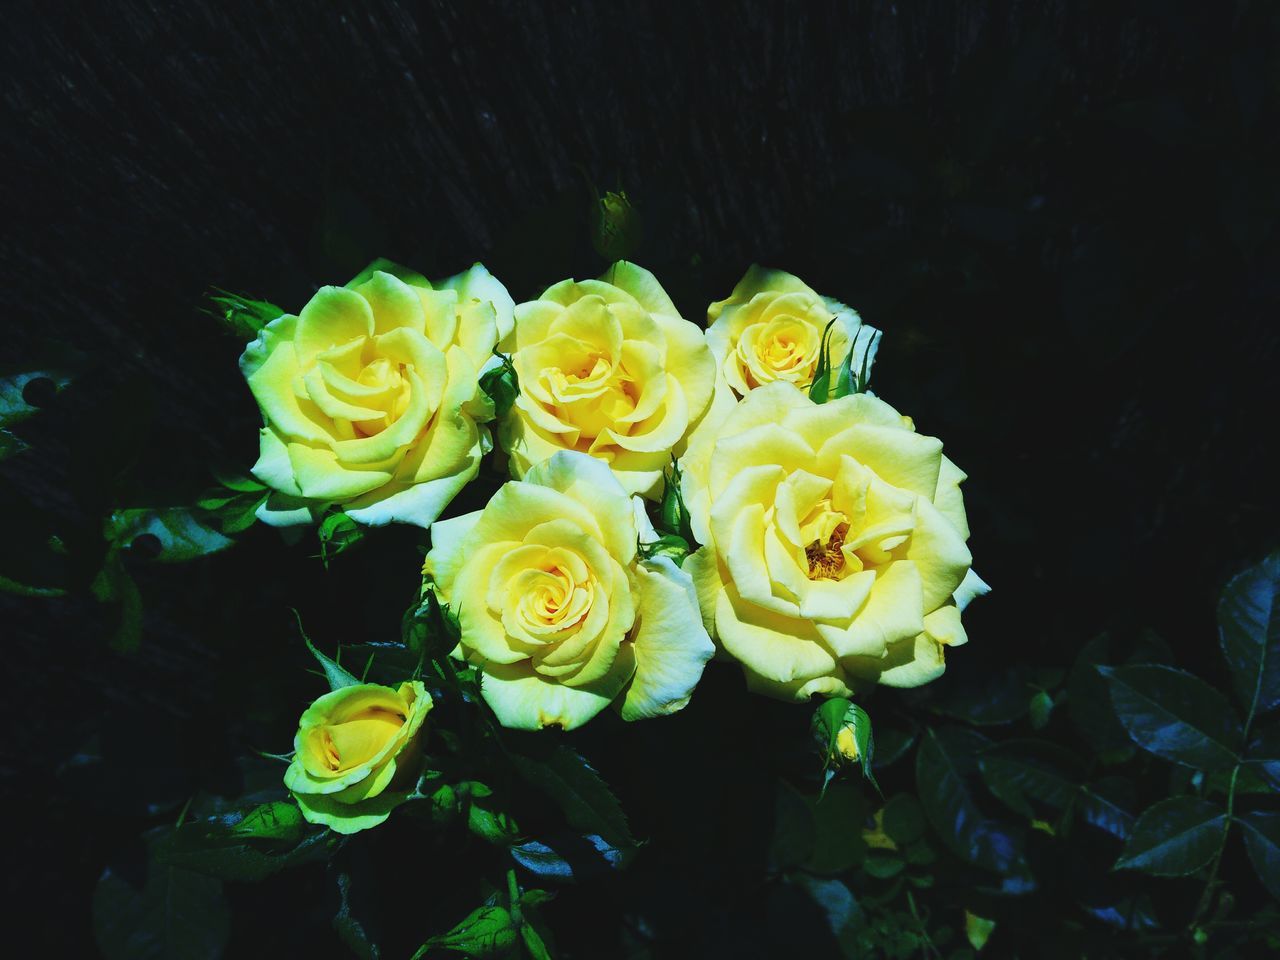 Roses, yellow roses